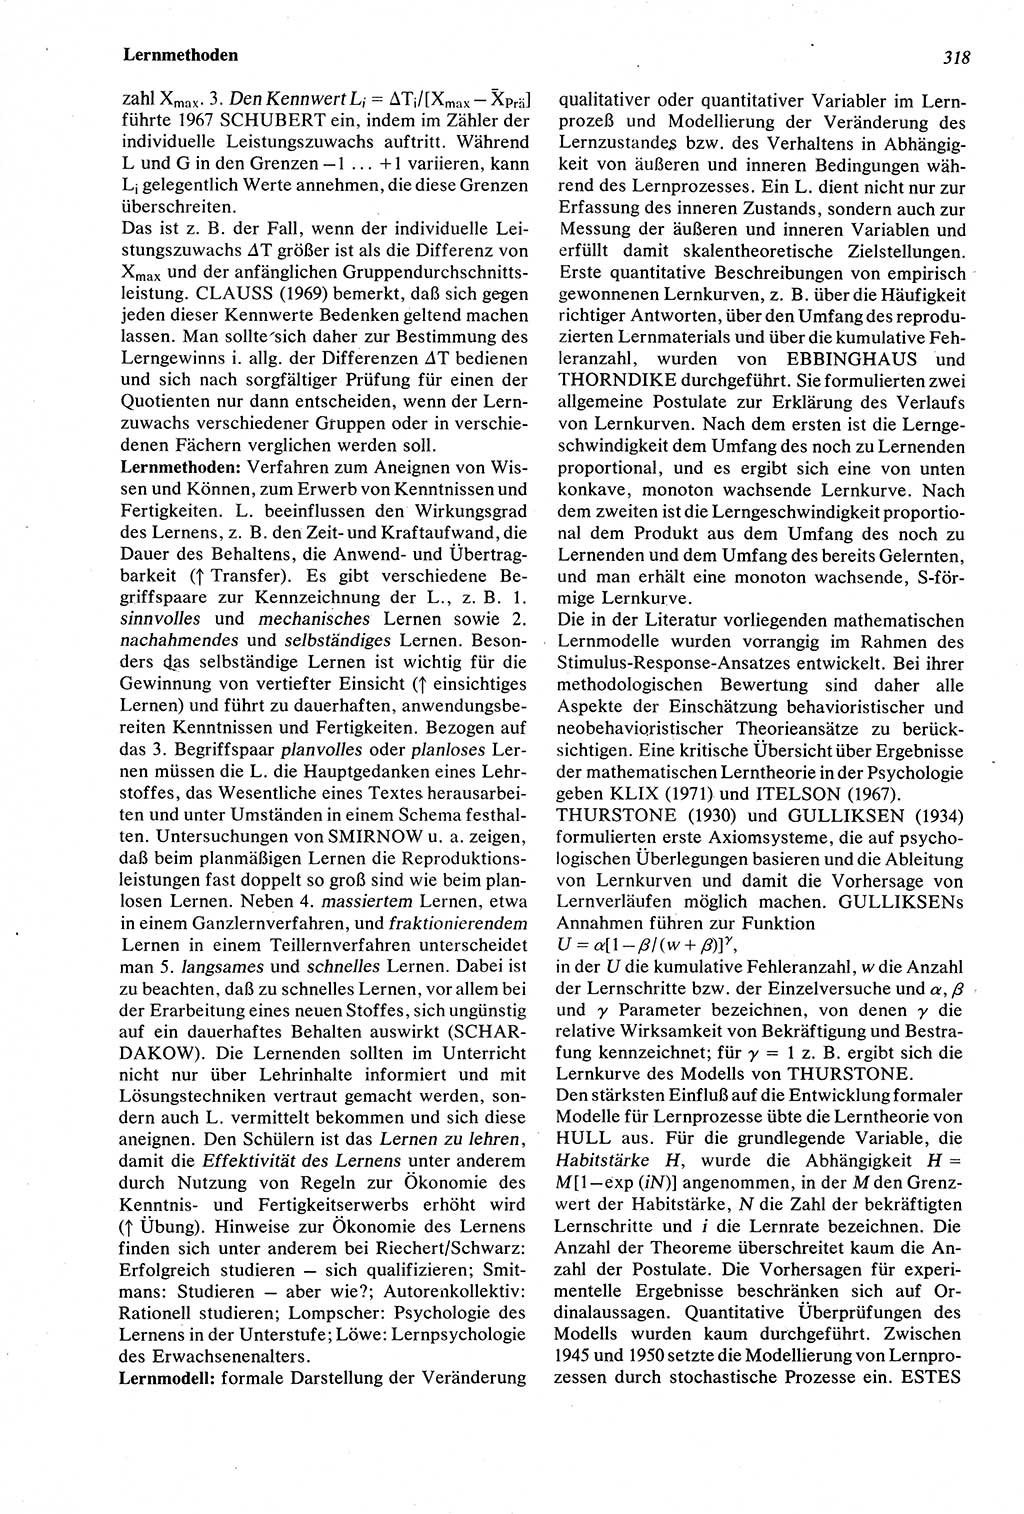 Wörterbuch der Psychologie [Deutsche Demokratische Republik (DDR)] 1976, Seite 318 (Wb. Psych. DDR 1976, S. 318)